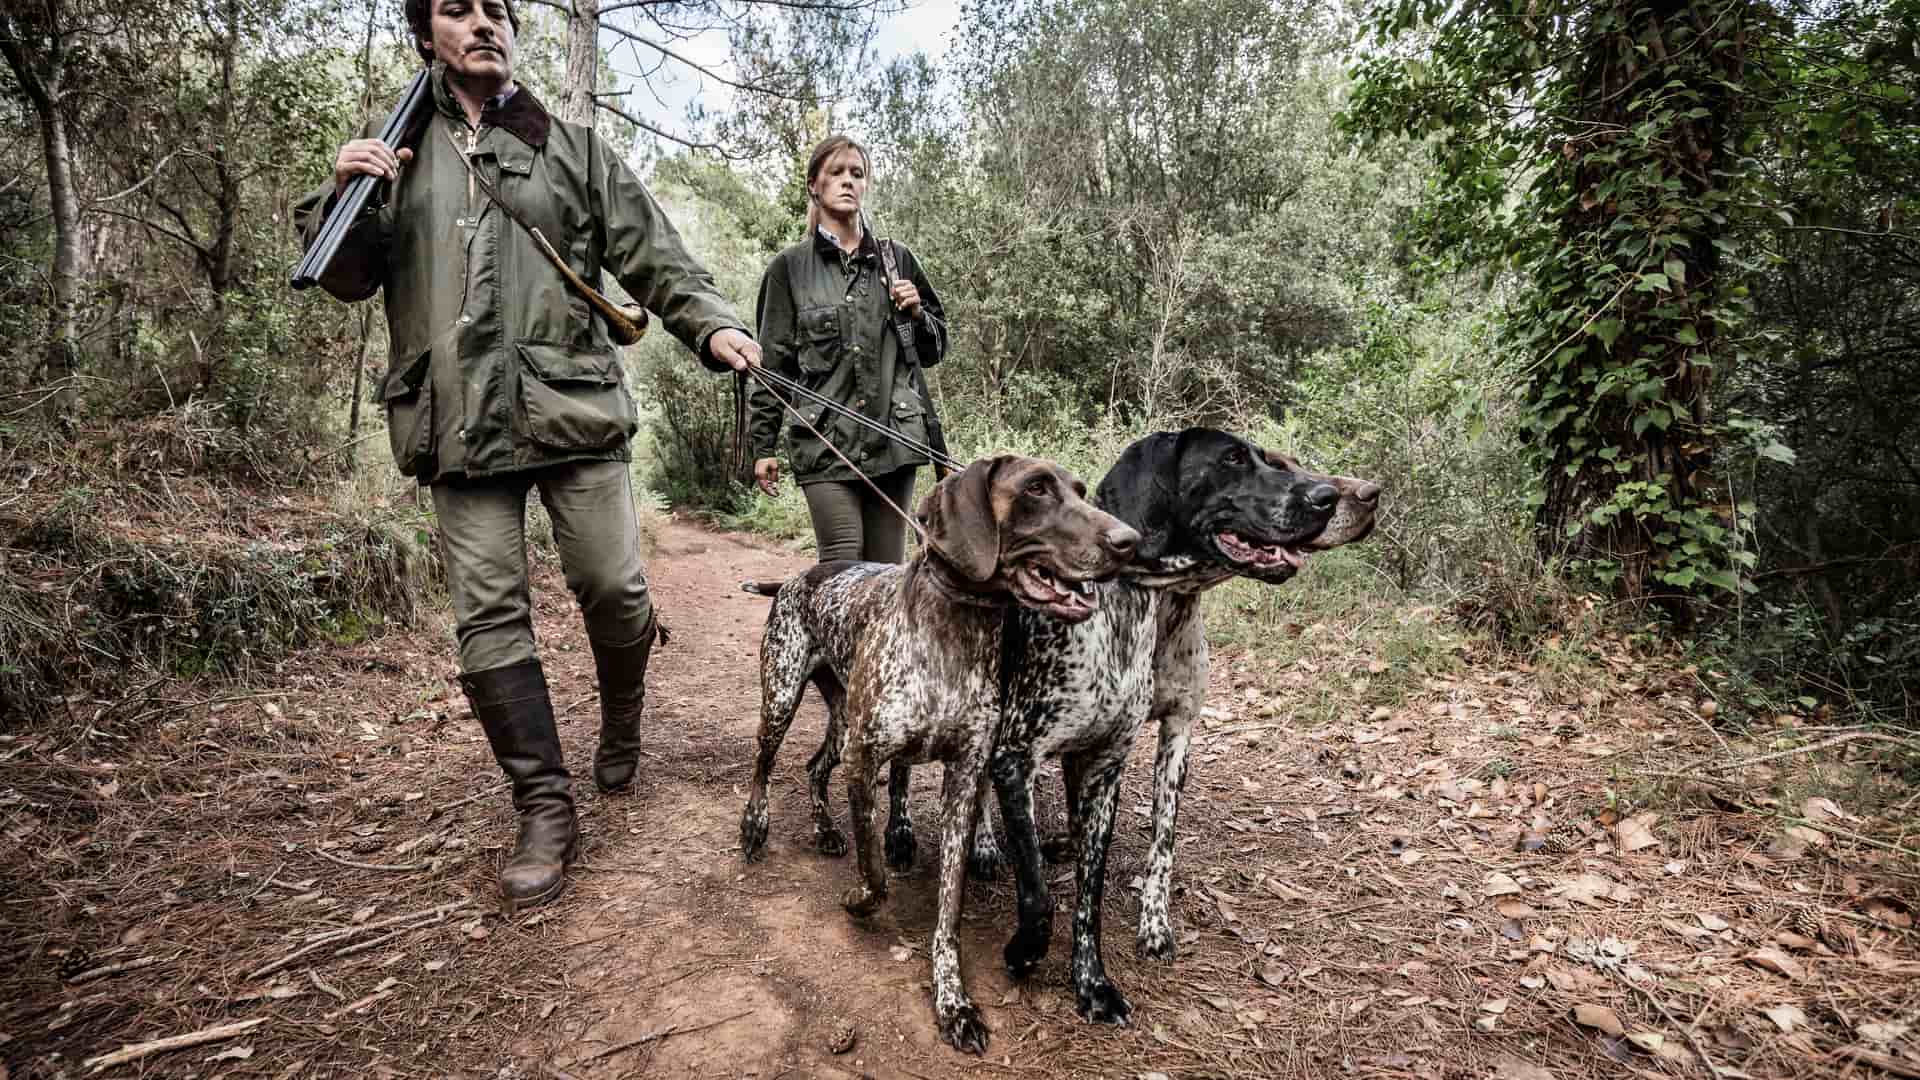 Axa seguro caza: para perros, contratar, precio y renovar